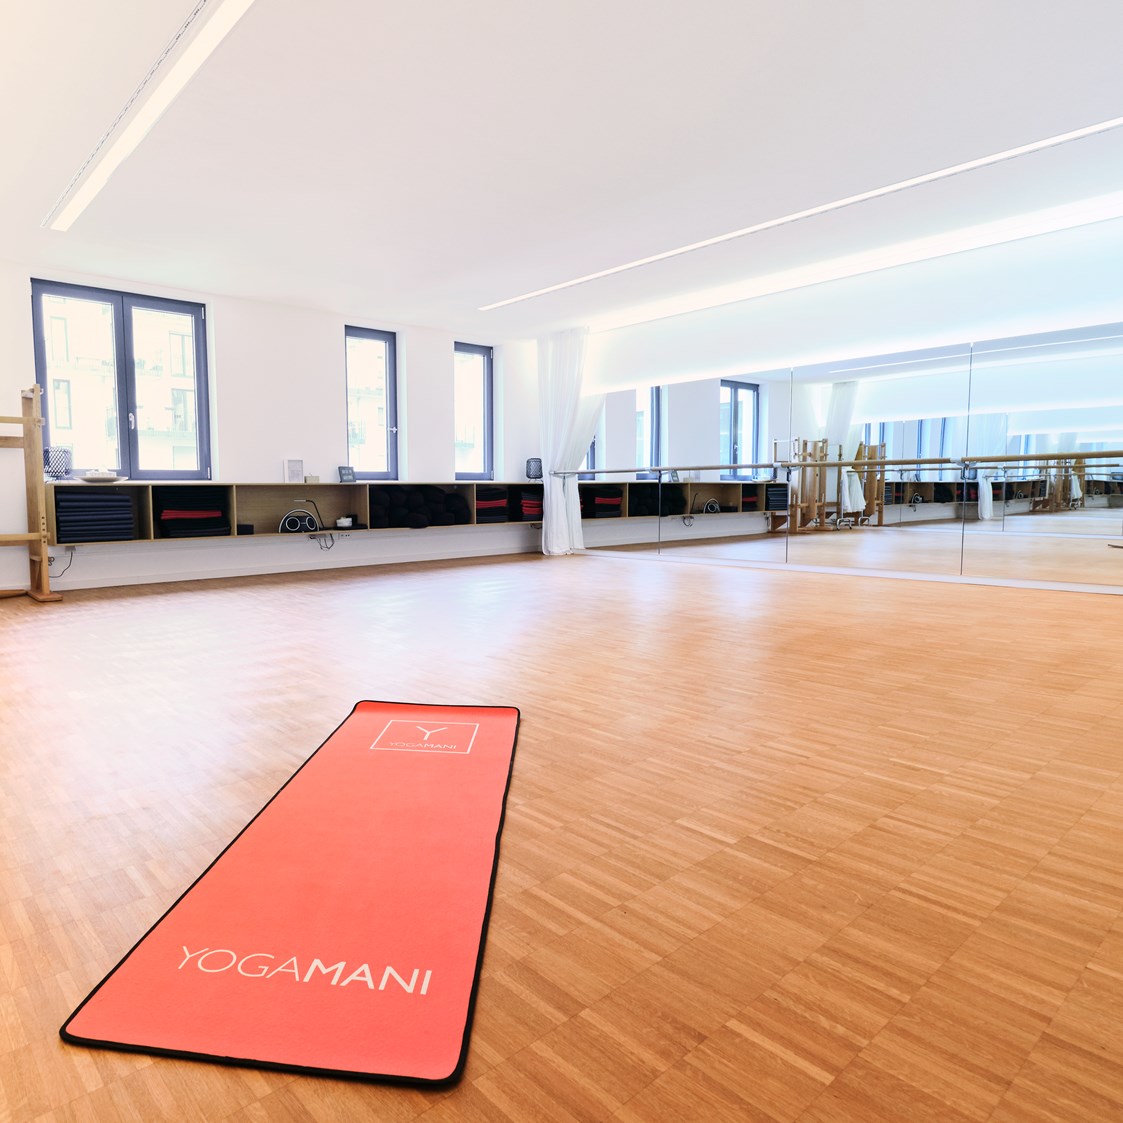 Yoga: unsere YOGAMANI Location in der Innenstadt - YOGAMANI Karlsruhe